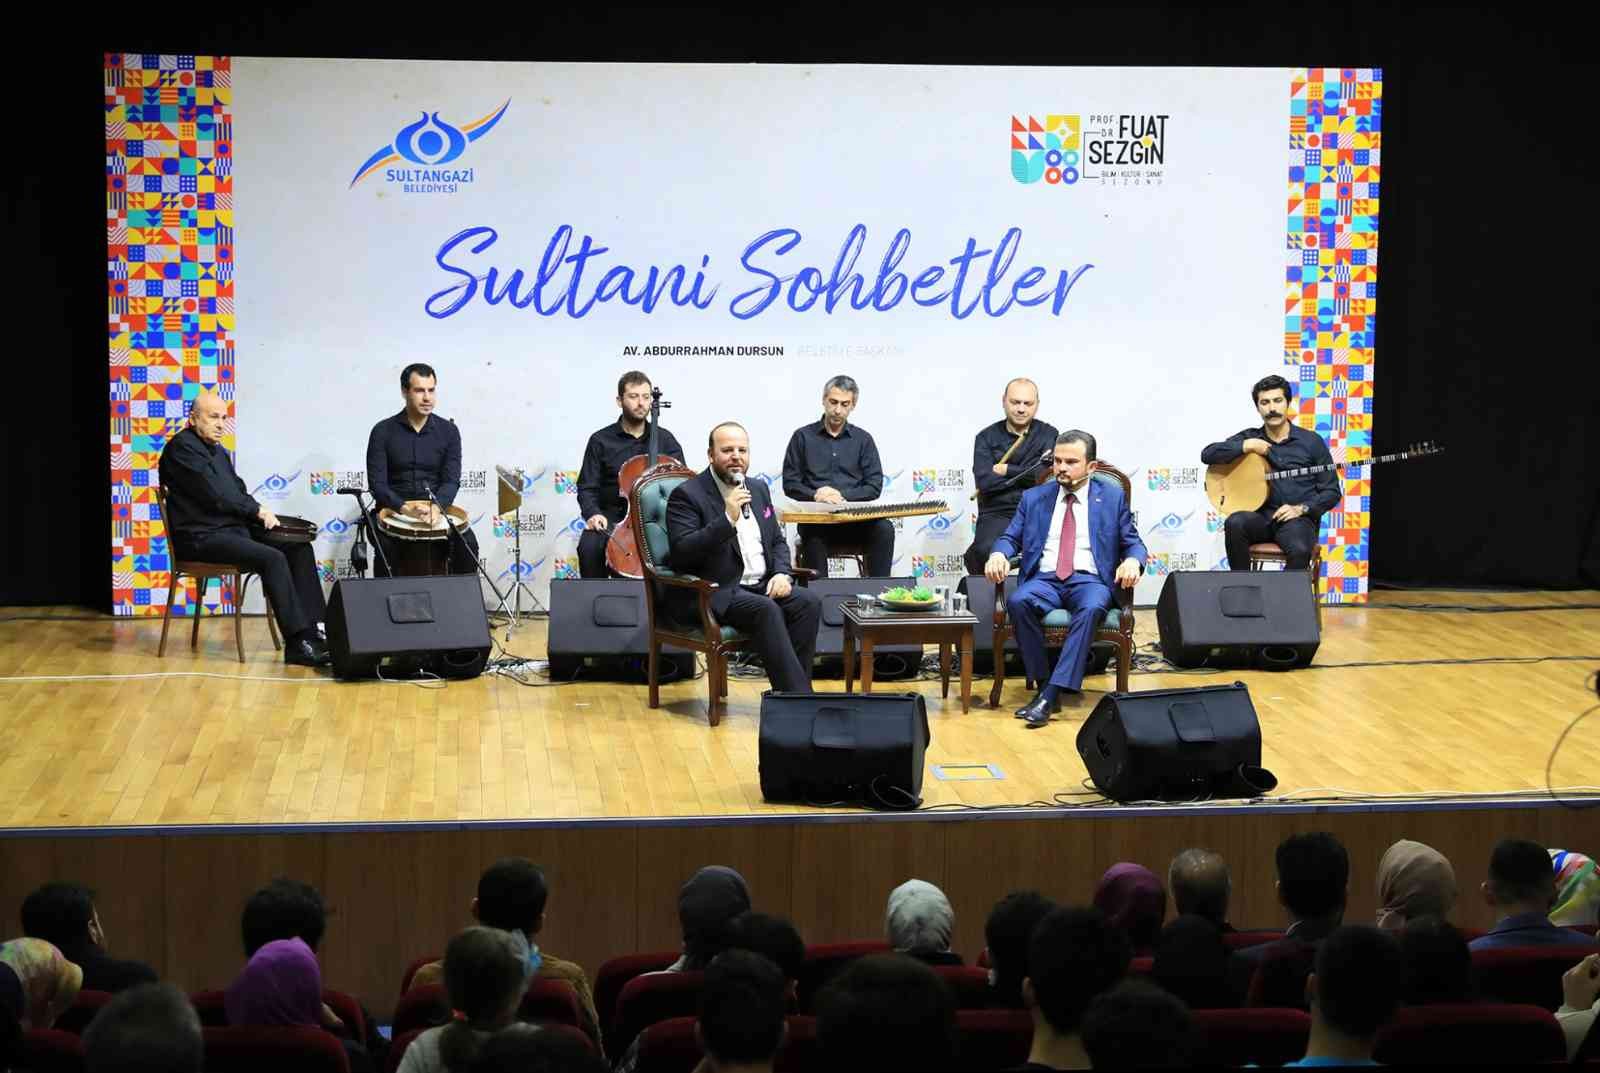 Sultani Sohbetler’in ilkinde gençlere yönelik yurt dışı proje fırsatları konuşuldu #istanbul